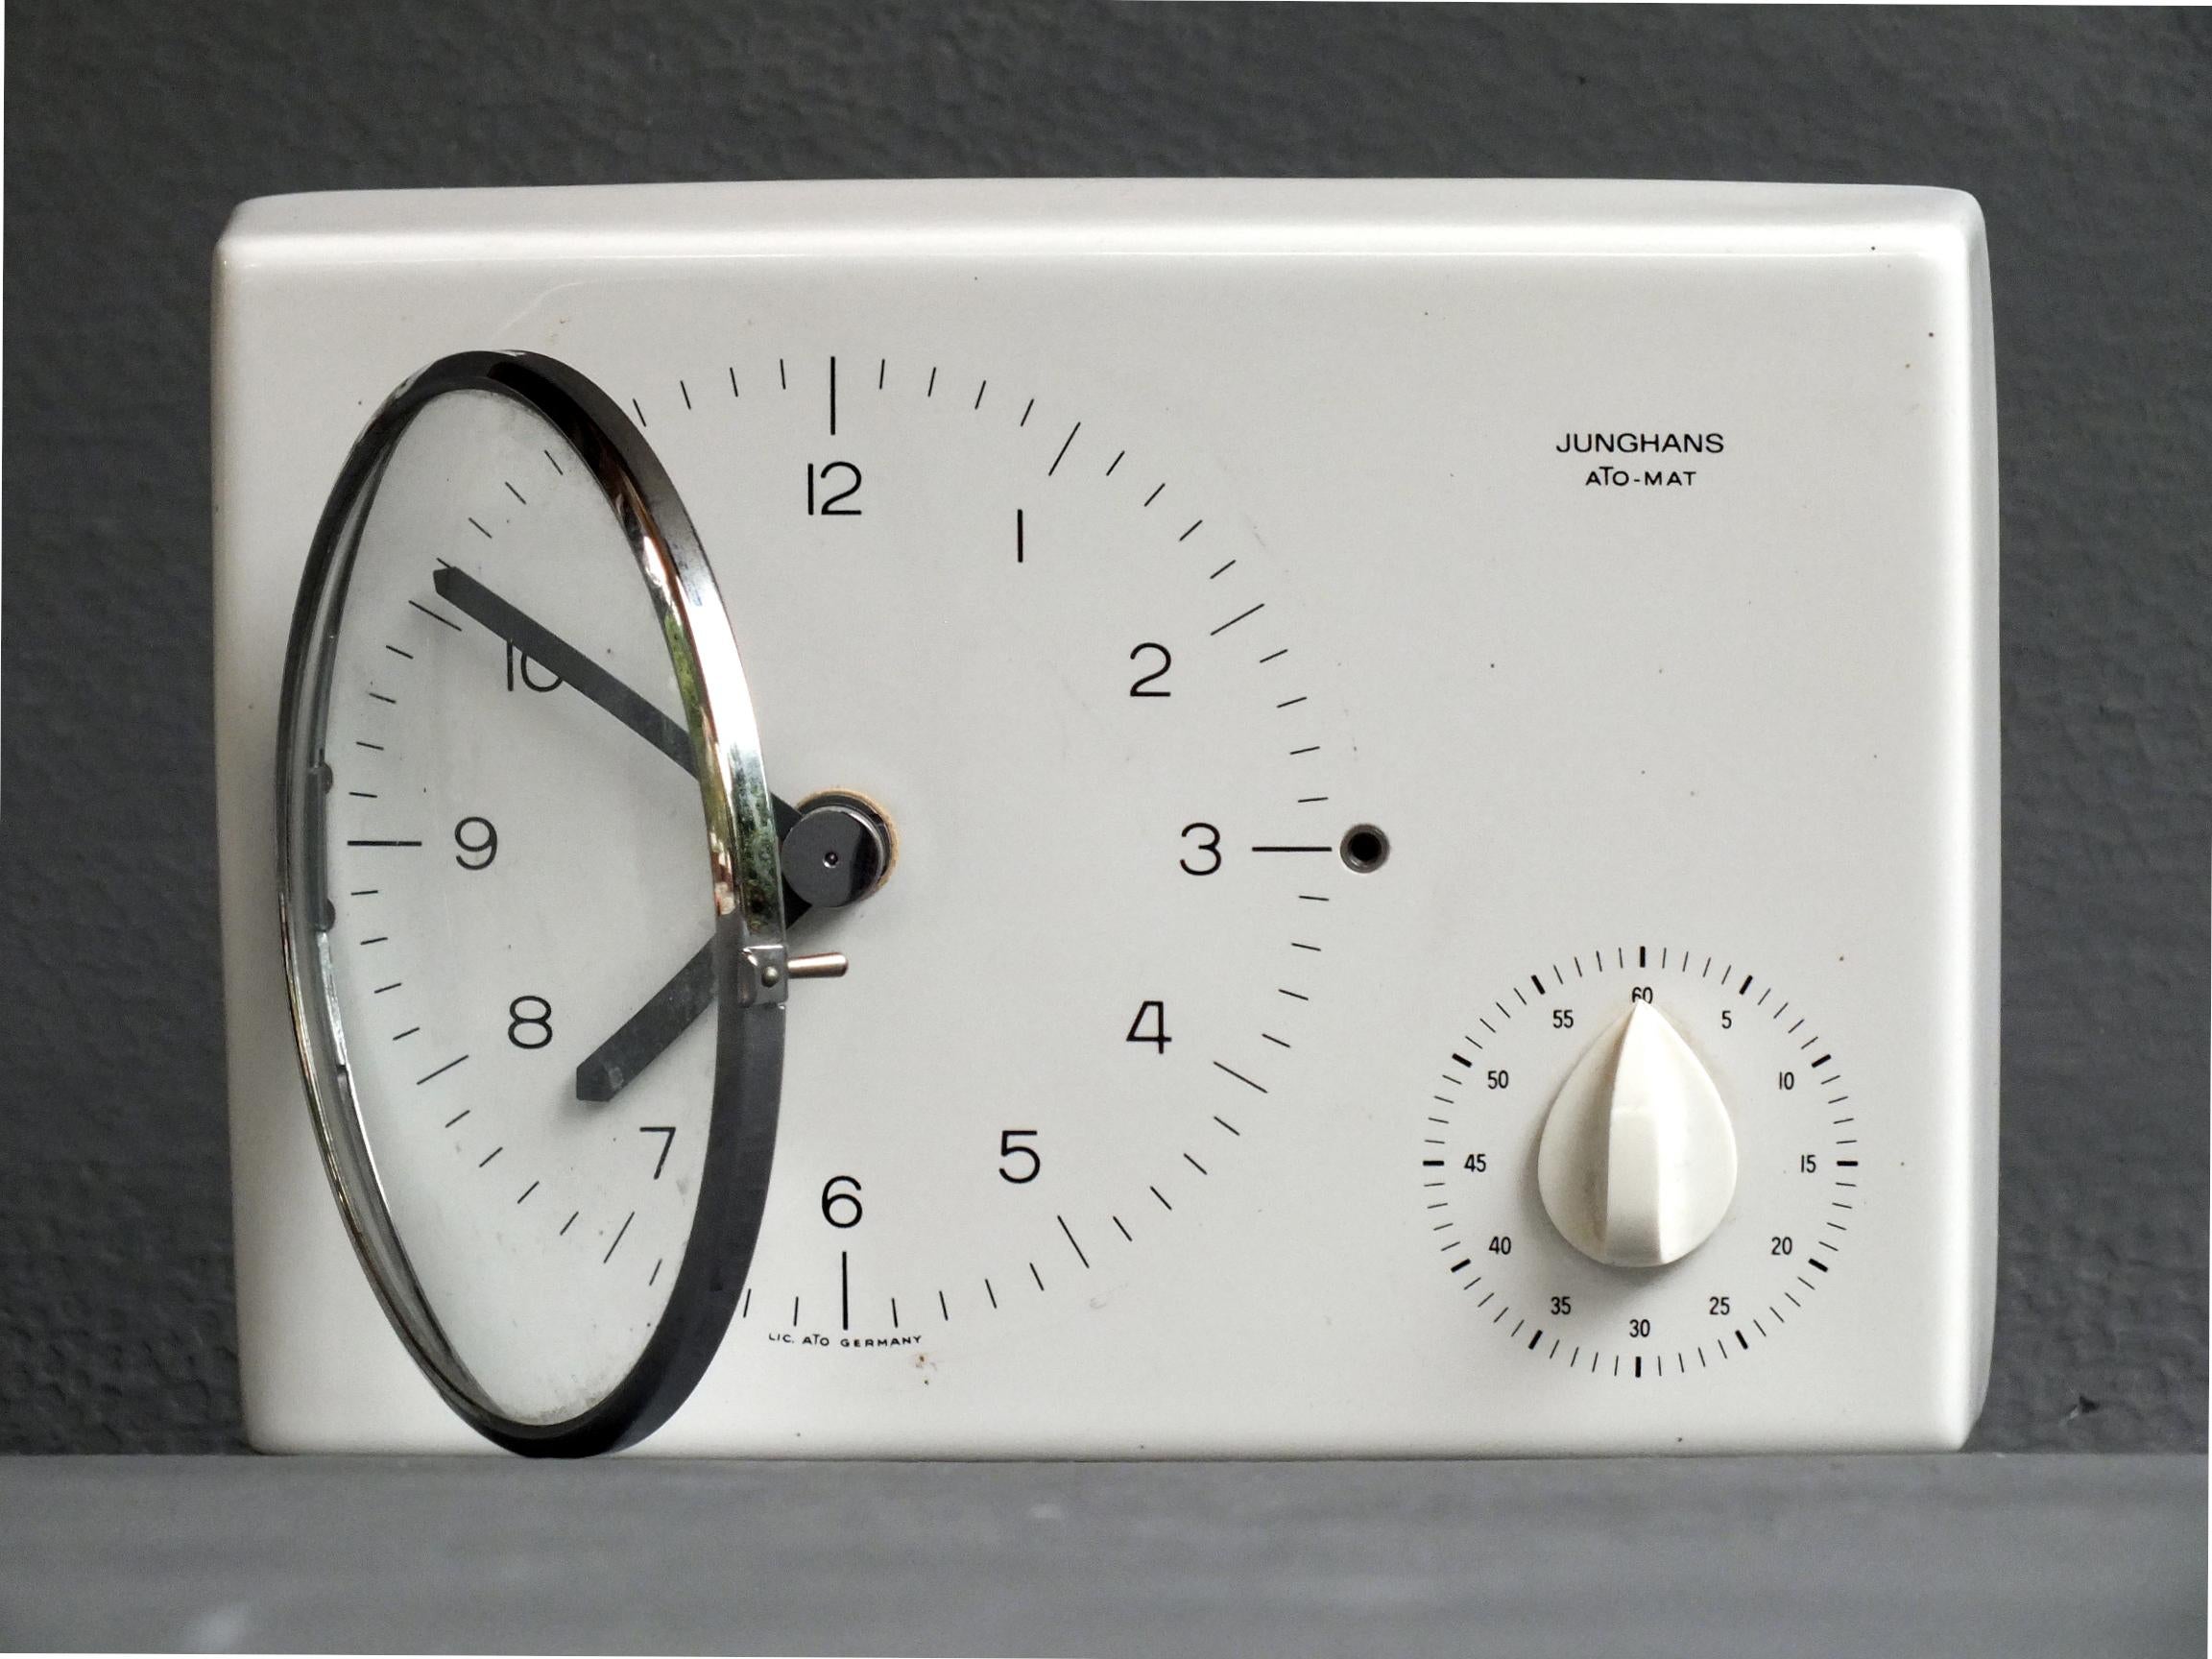 Max Bill Design Jahre '60 für Junghans Wanduhr ato-mat erste Bearbeitung mit elektro/mechanischem Uhrwerk

     die Uhr ist in Keramik Metall und Kunststoff, in gutem Zustand und sehr selten.

     weiße Farbe, Maße 22 cm x 15 x 5 - 8 x 6 x 2